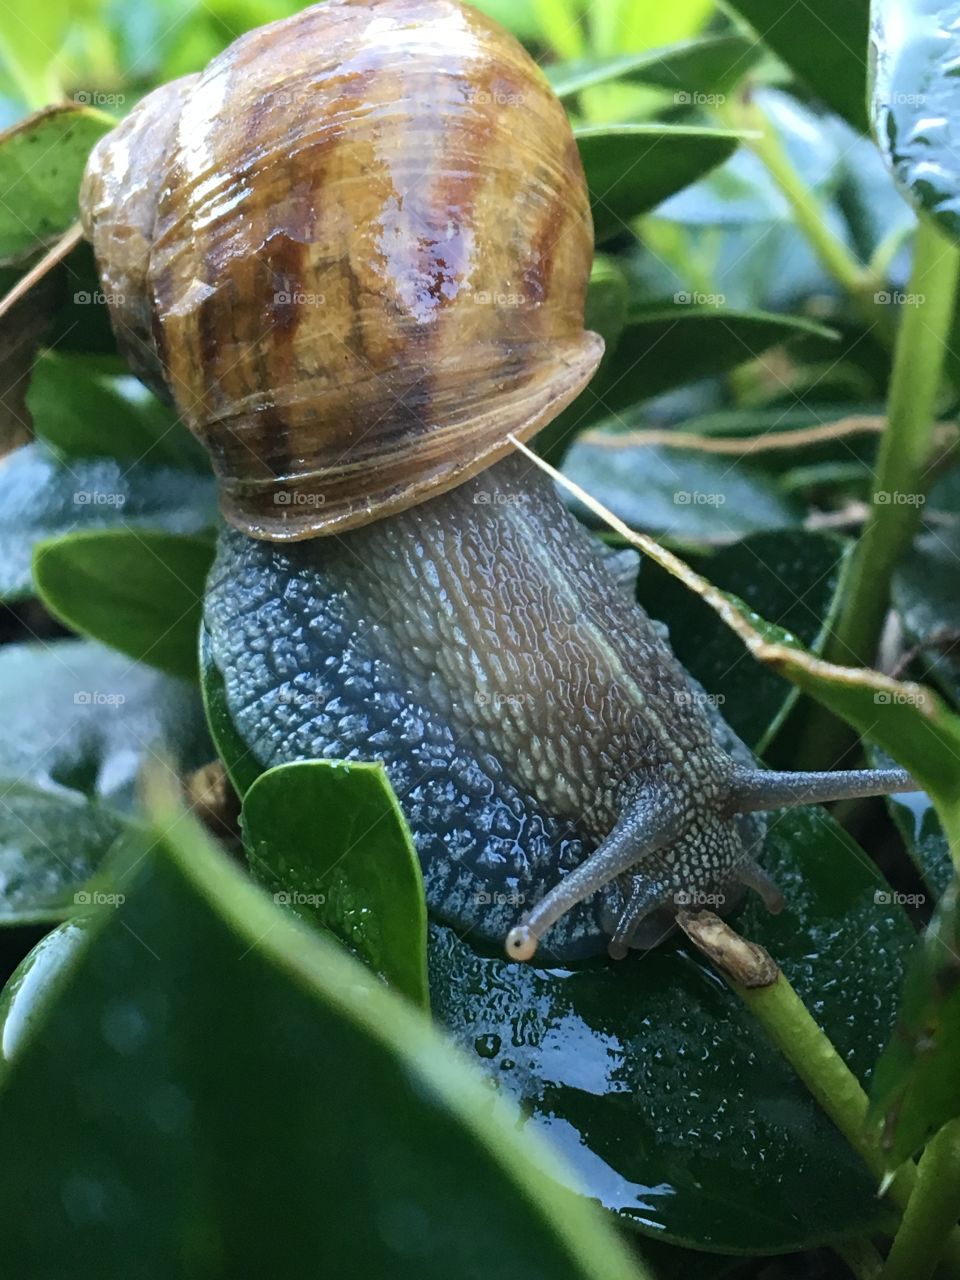 Snail in a bush